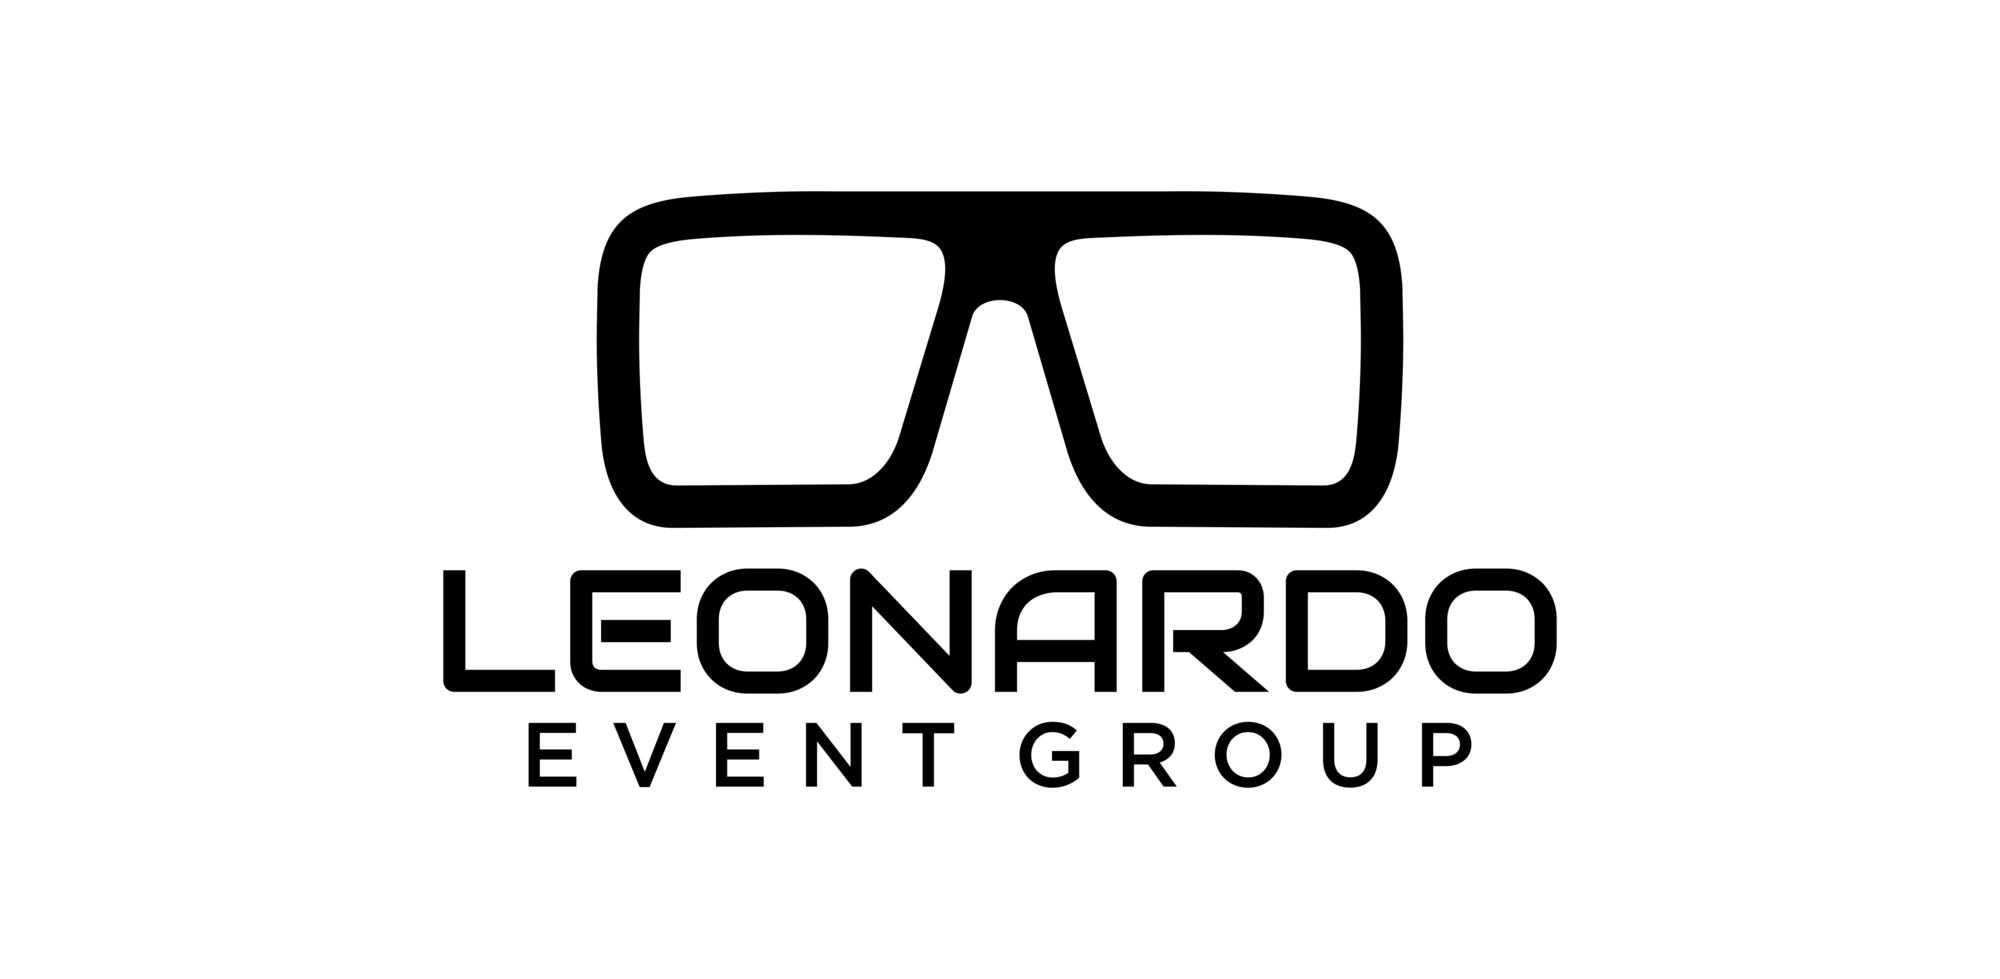 Leonardo Event Group Logo